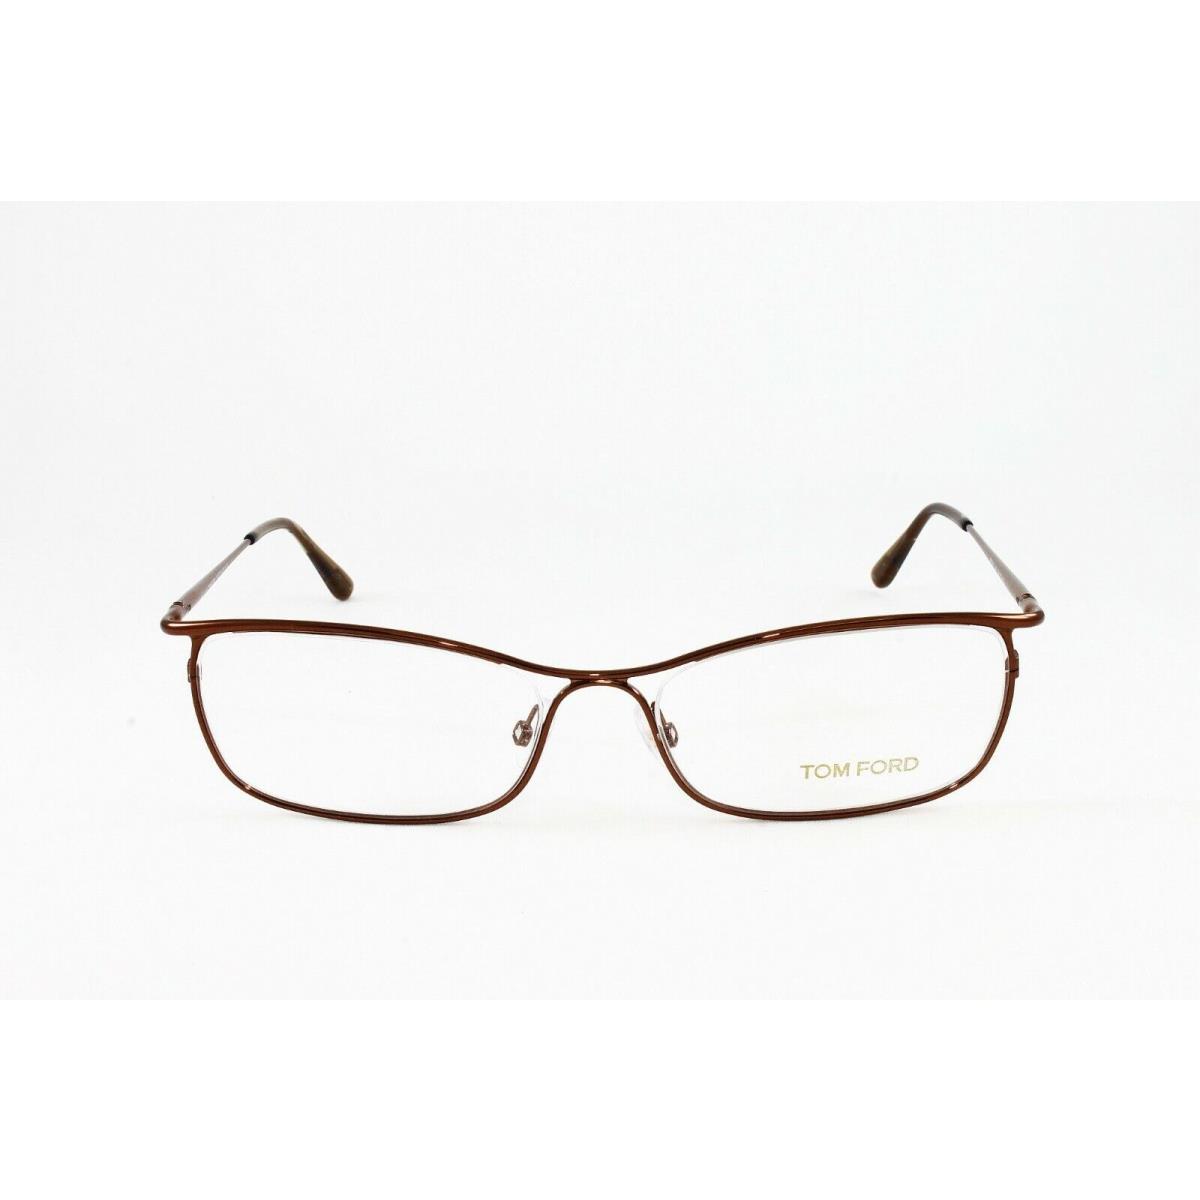 Tom Ford eyeglasses Color - Brown Frame 3